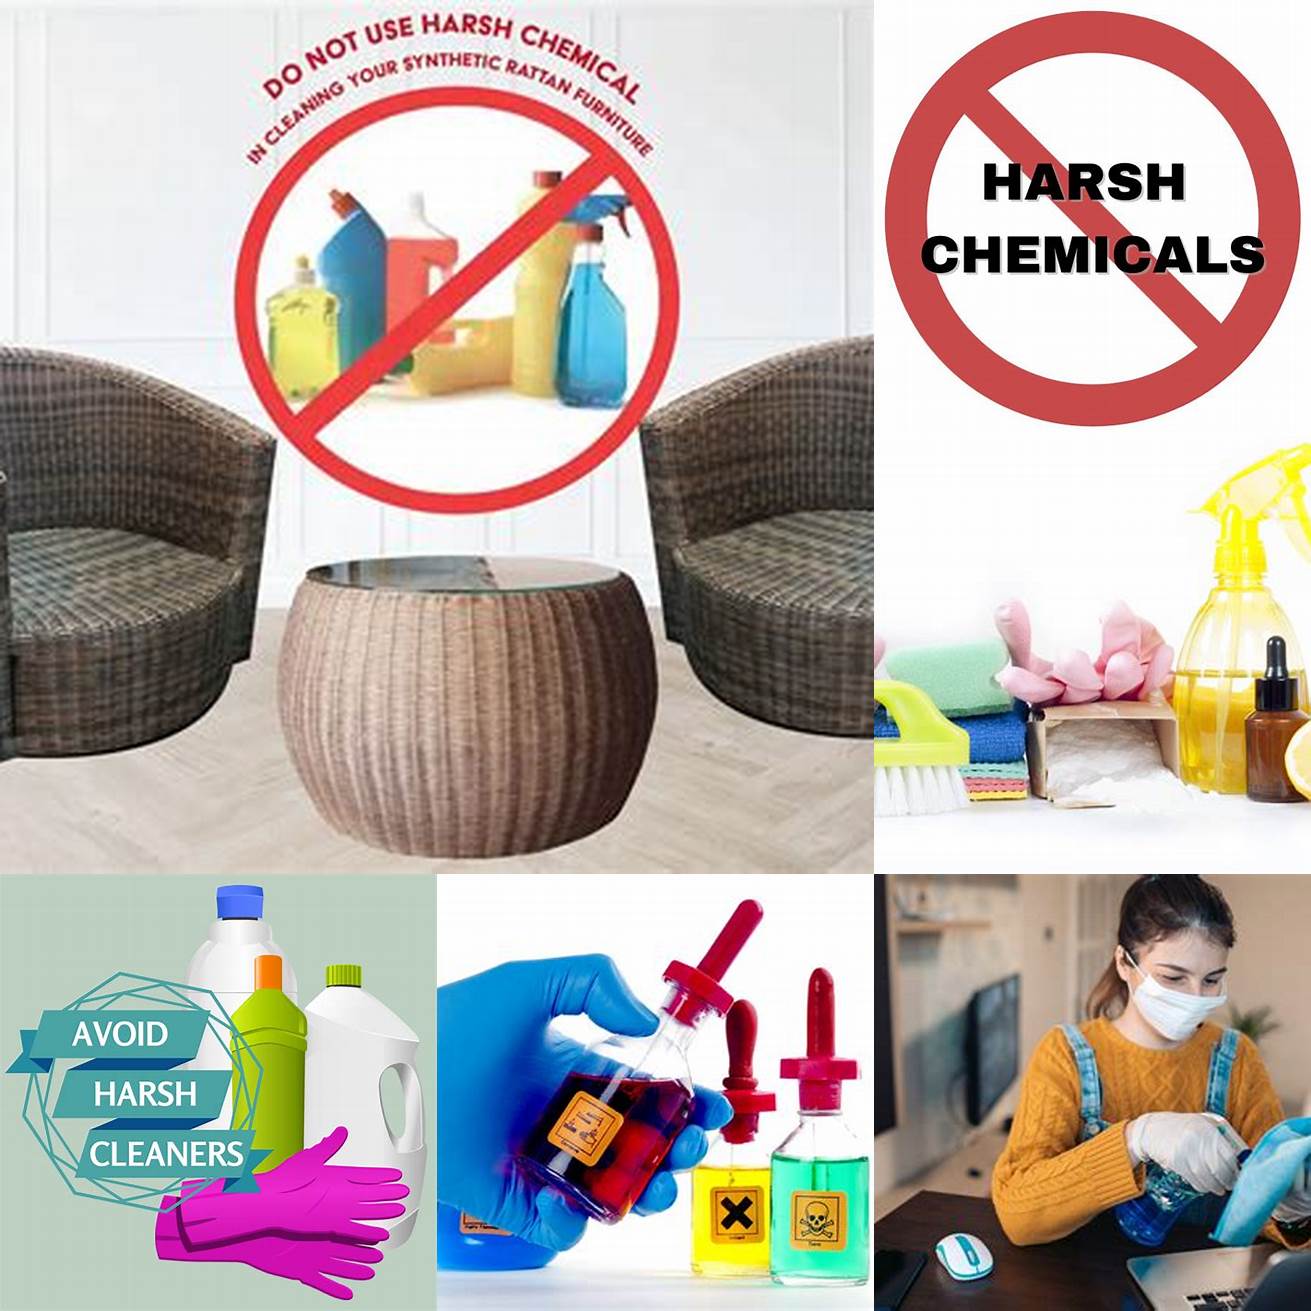 Avoid using harsh chemicals